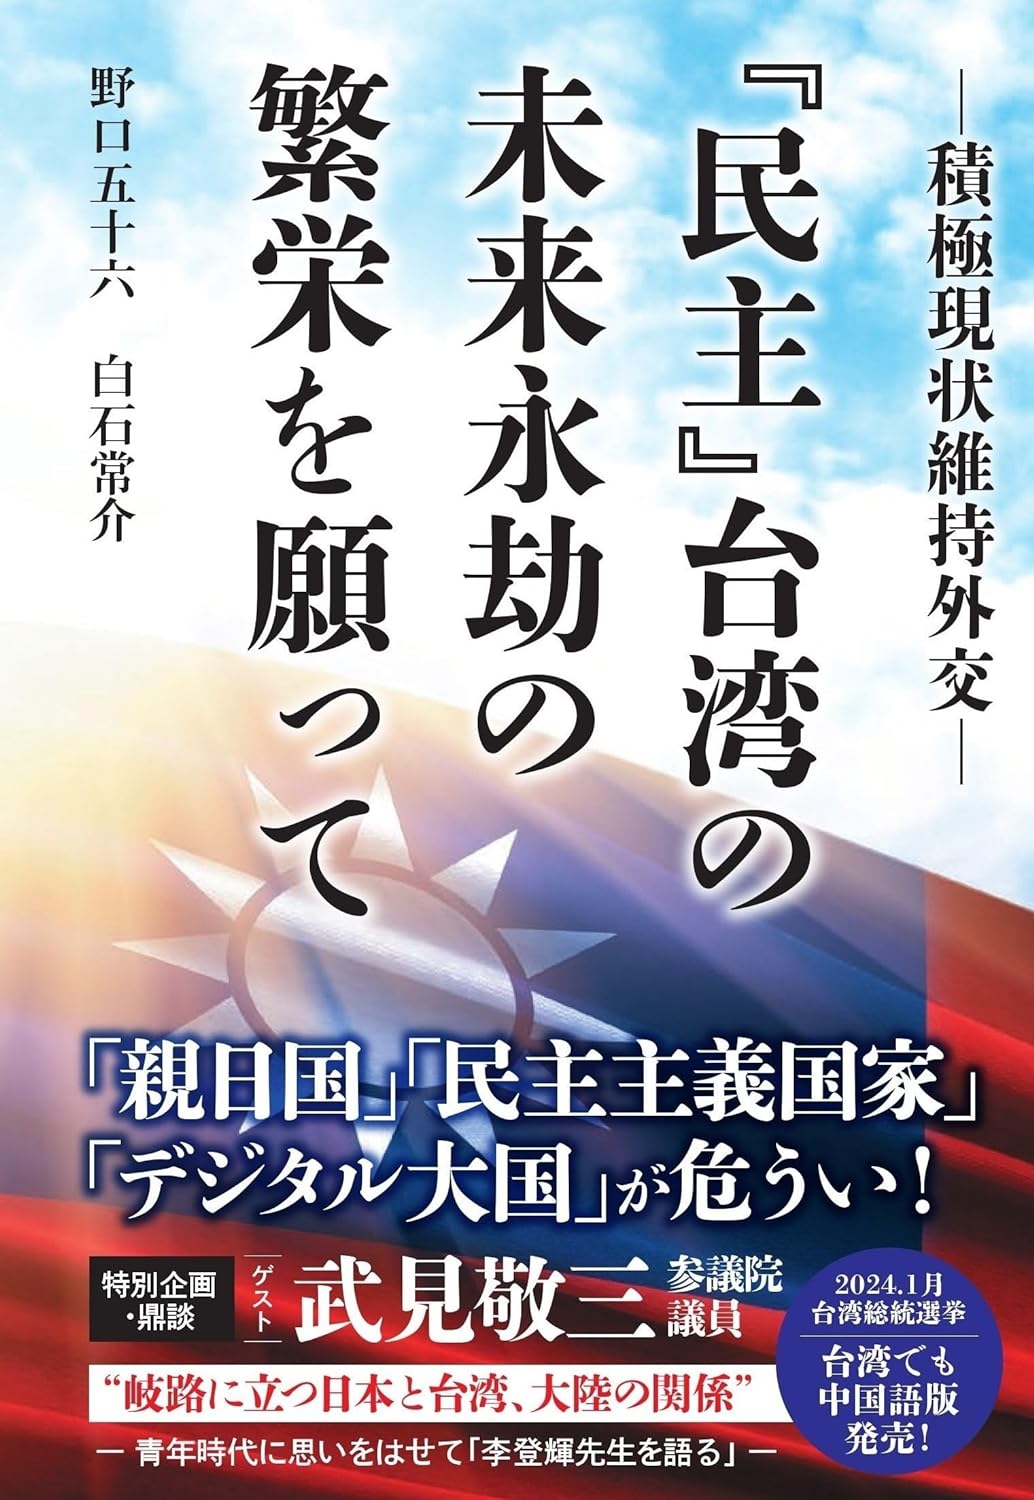 『民主』台湾の未来永劫の繁栄を願って